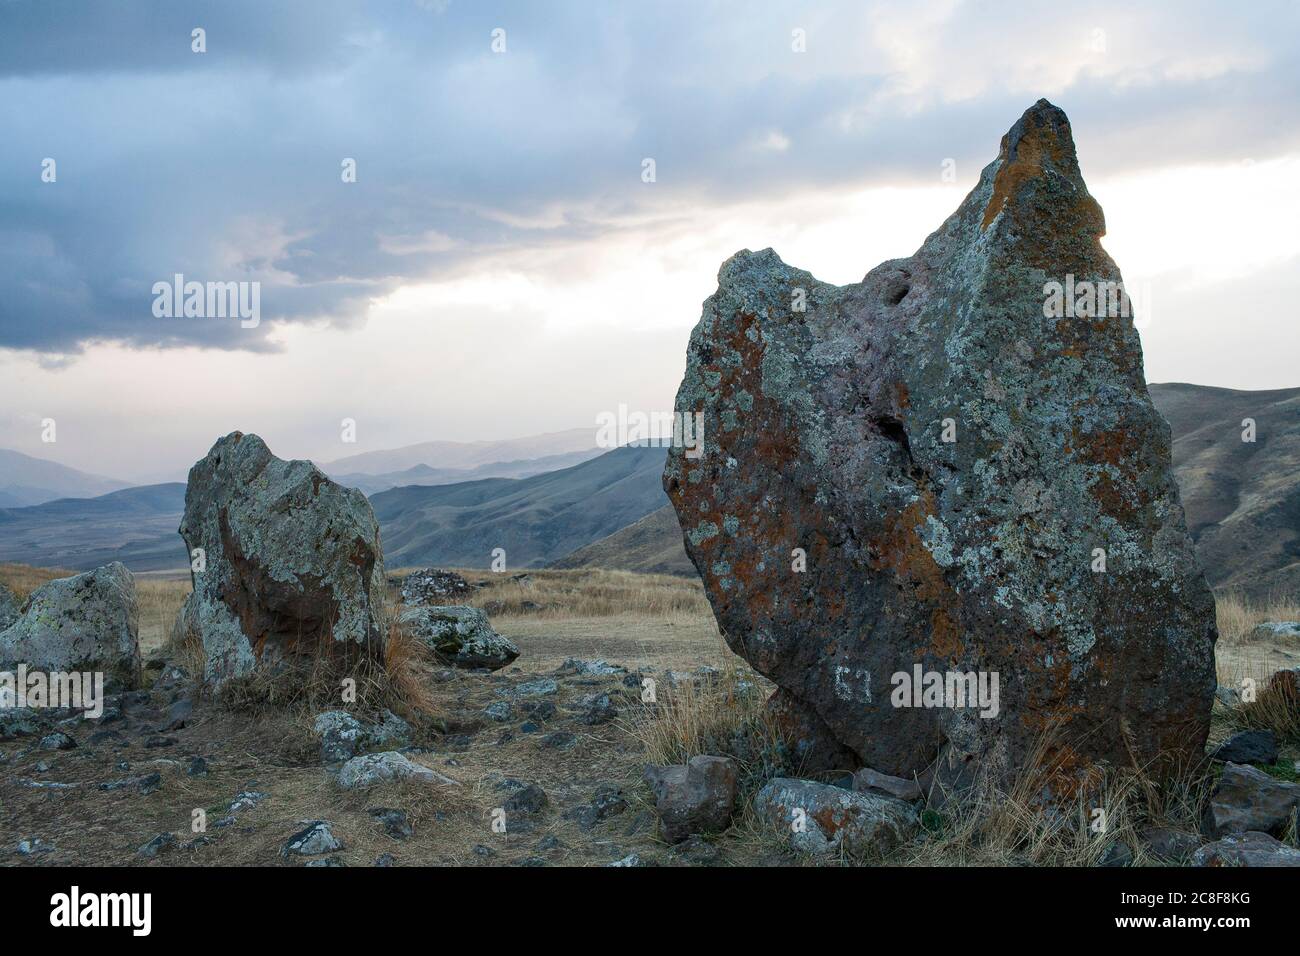 Carahunge, situé sur une plaine spectaculaire, est un site archéologique préhistorique près de la ville de Sisian dans la province de Syunik en Arménie. Banque D'Images